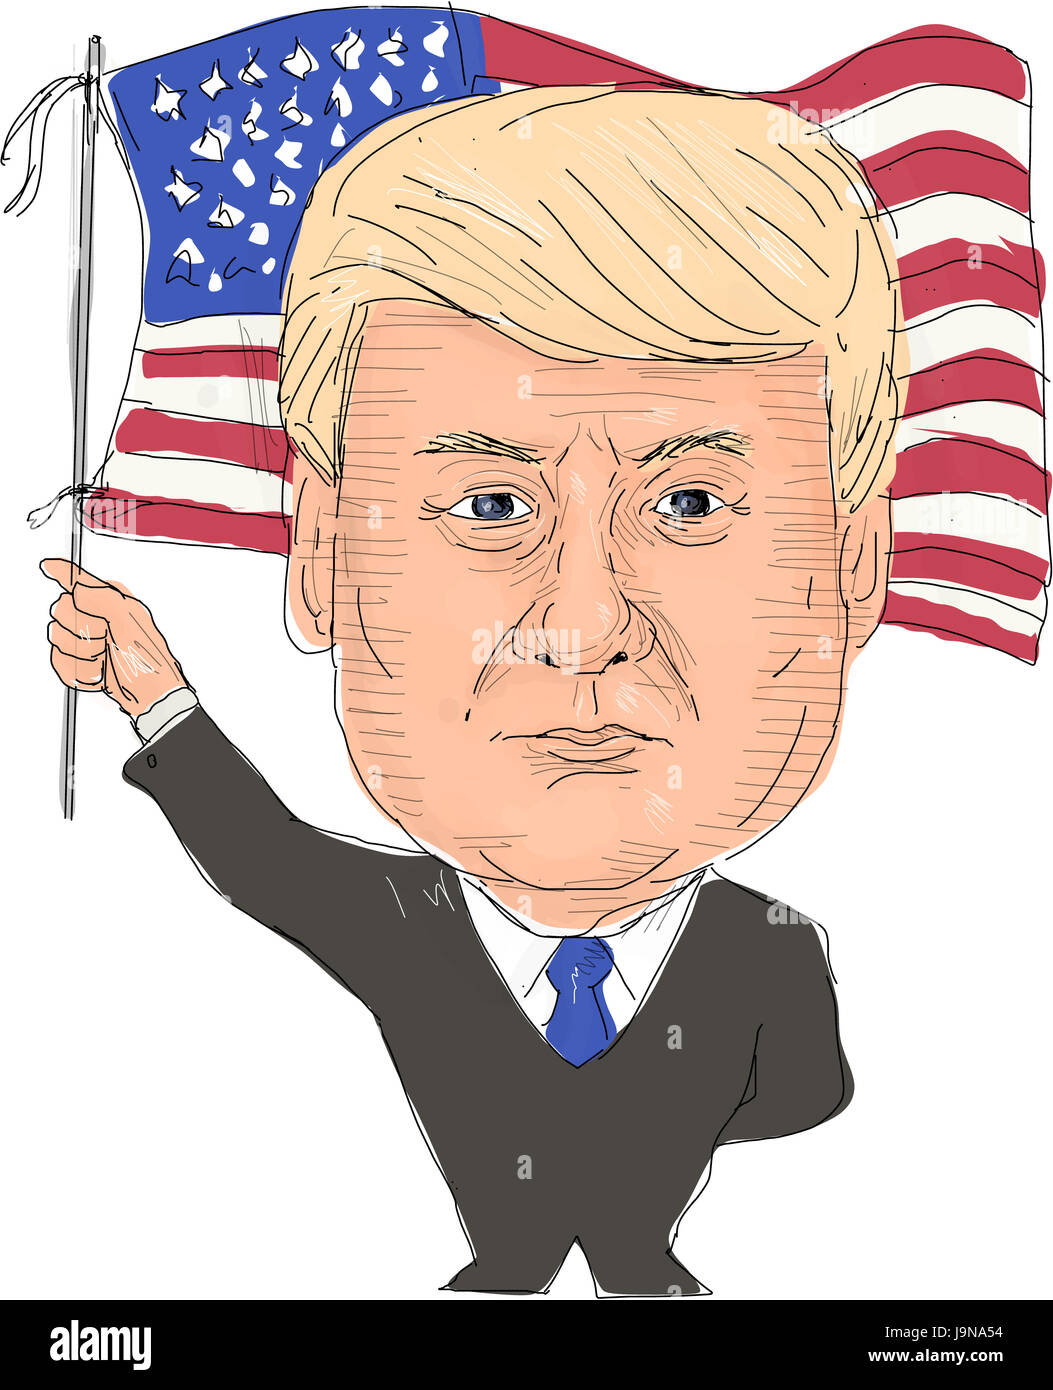 2 juin 2017 : illustration style Aquarelle de Donald Trump, président des États-Unis d'Amérique waving flag vu de l'avant ensemble sur des w Banque D'Images